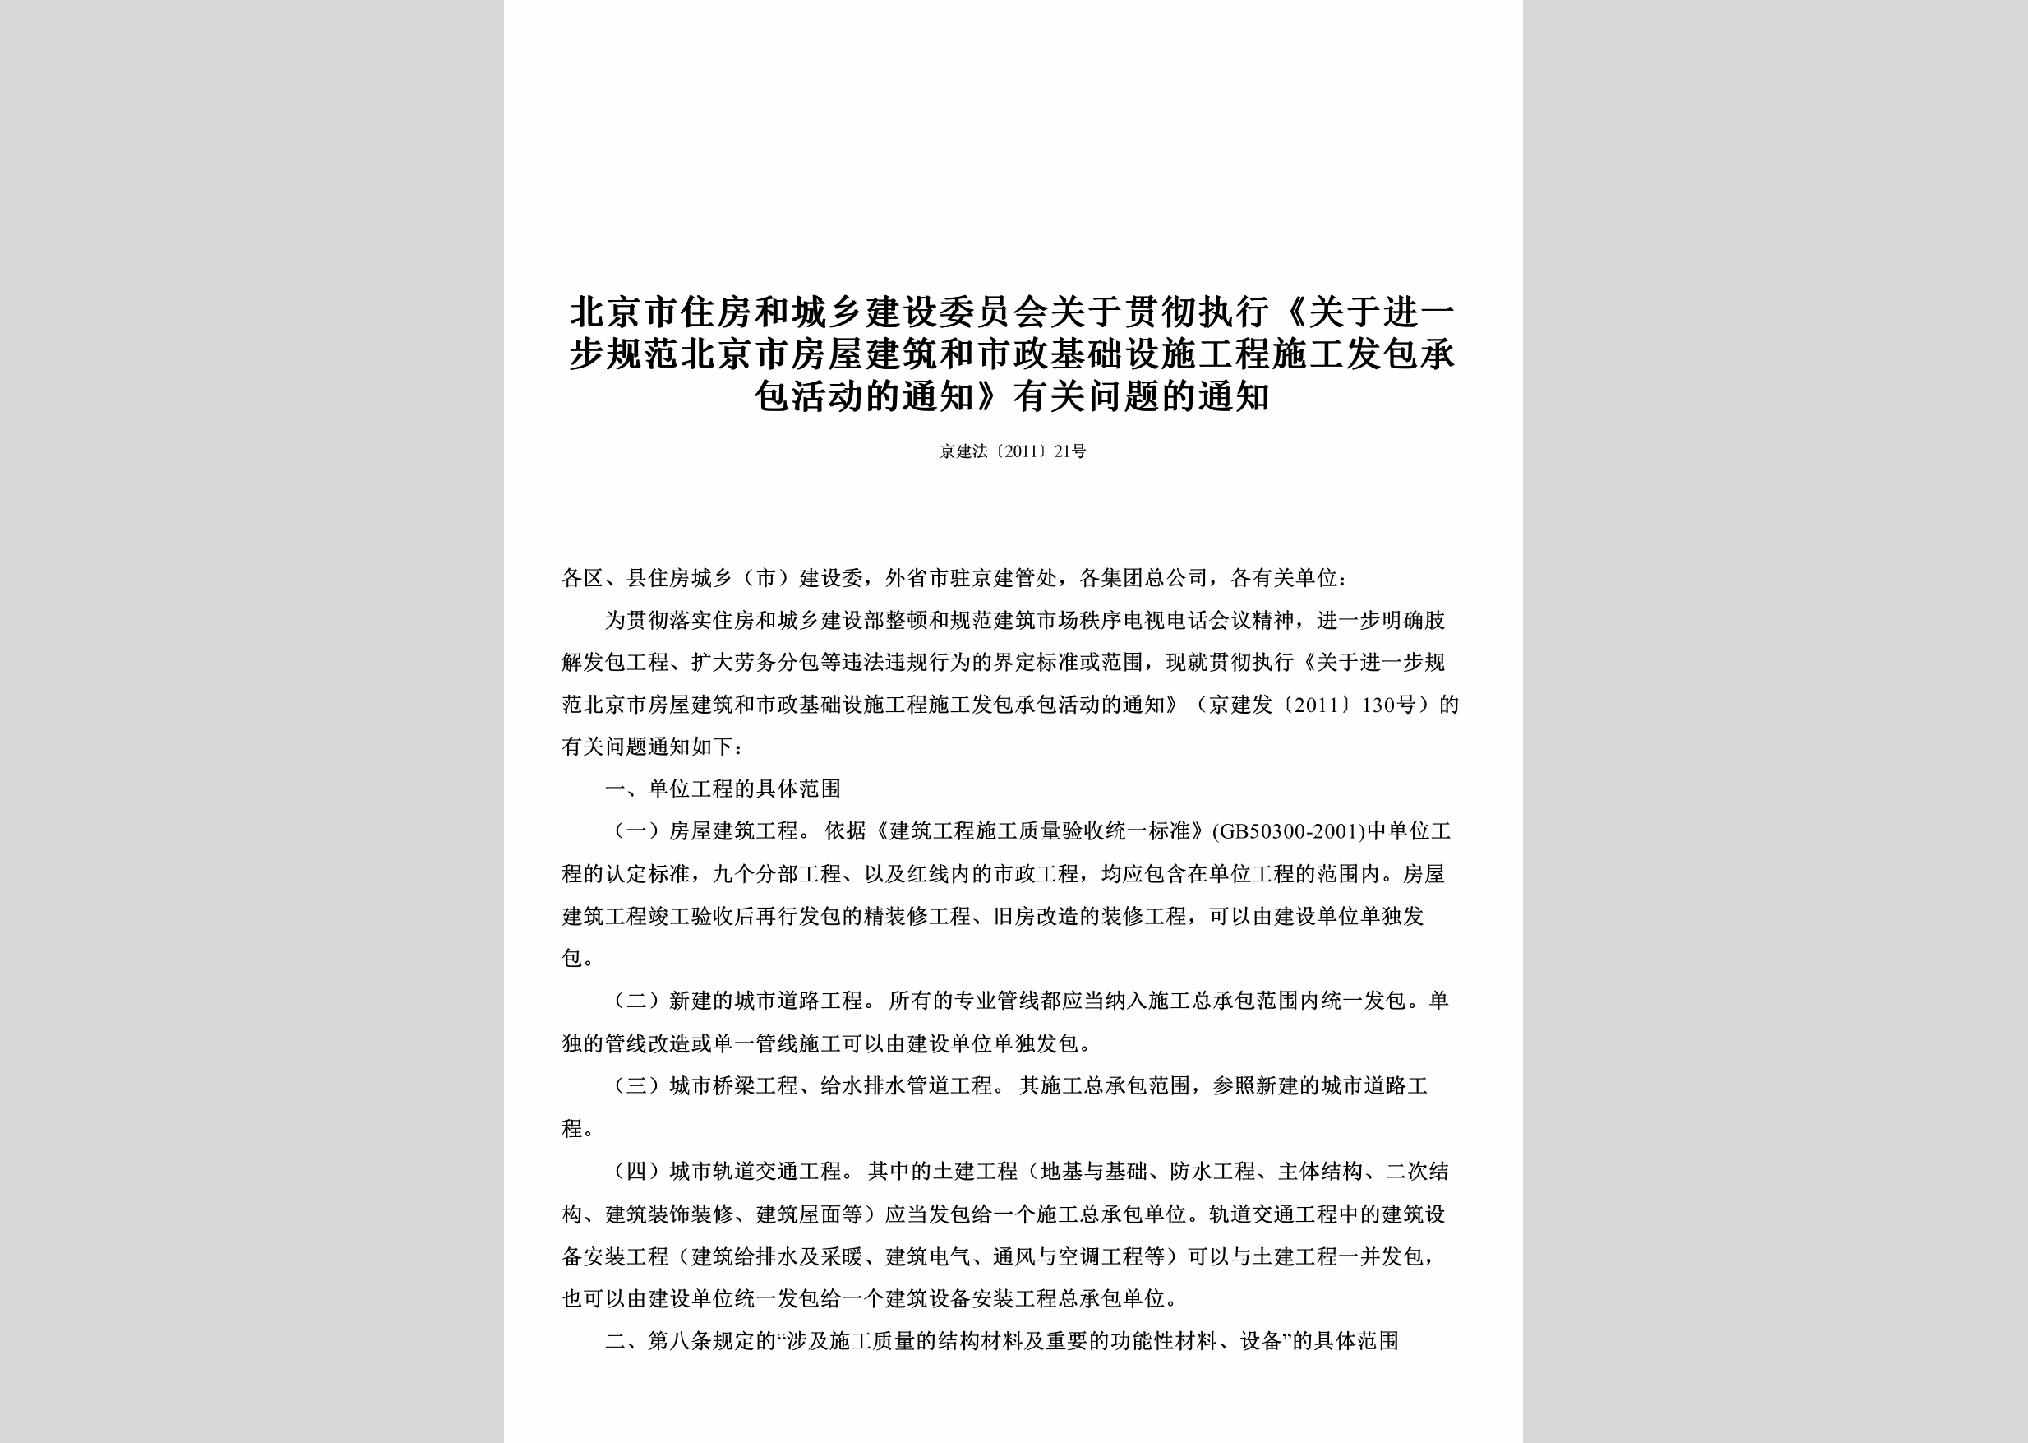 京建法[2011]21号：关于贯彻执行《关于进一步规范北京市房屋建筑和市政基础设施工程施工发包承包活动的通知》有关问题的通知